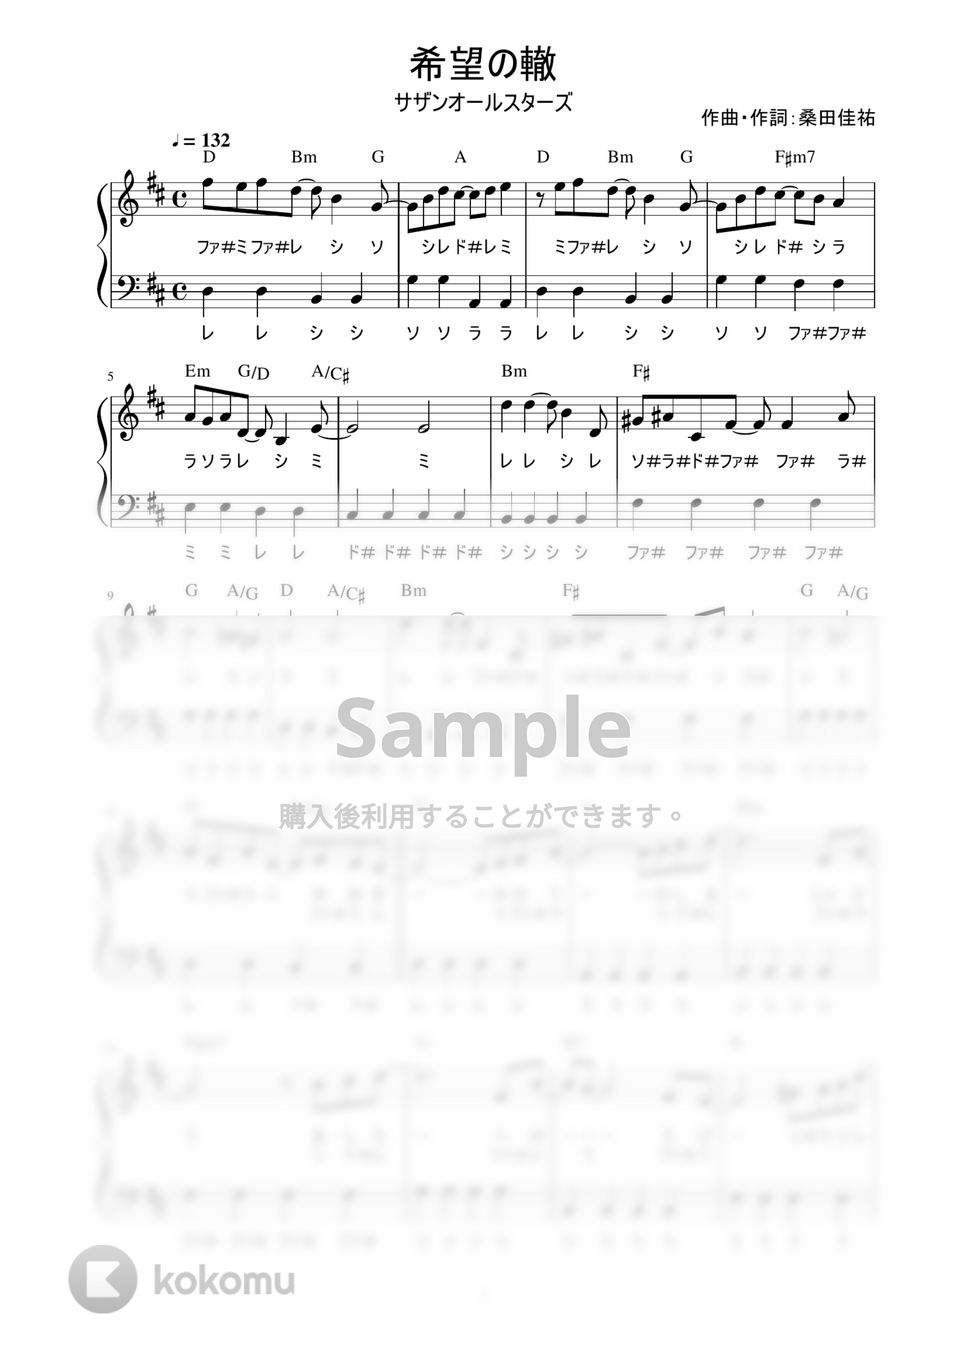 サザンオールスターズ - 希望の轍 (かんたん / 歌詞付き / ドレミ付き / 初心者) by piano.tokyo